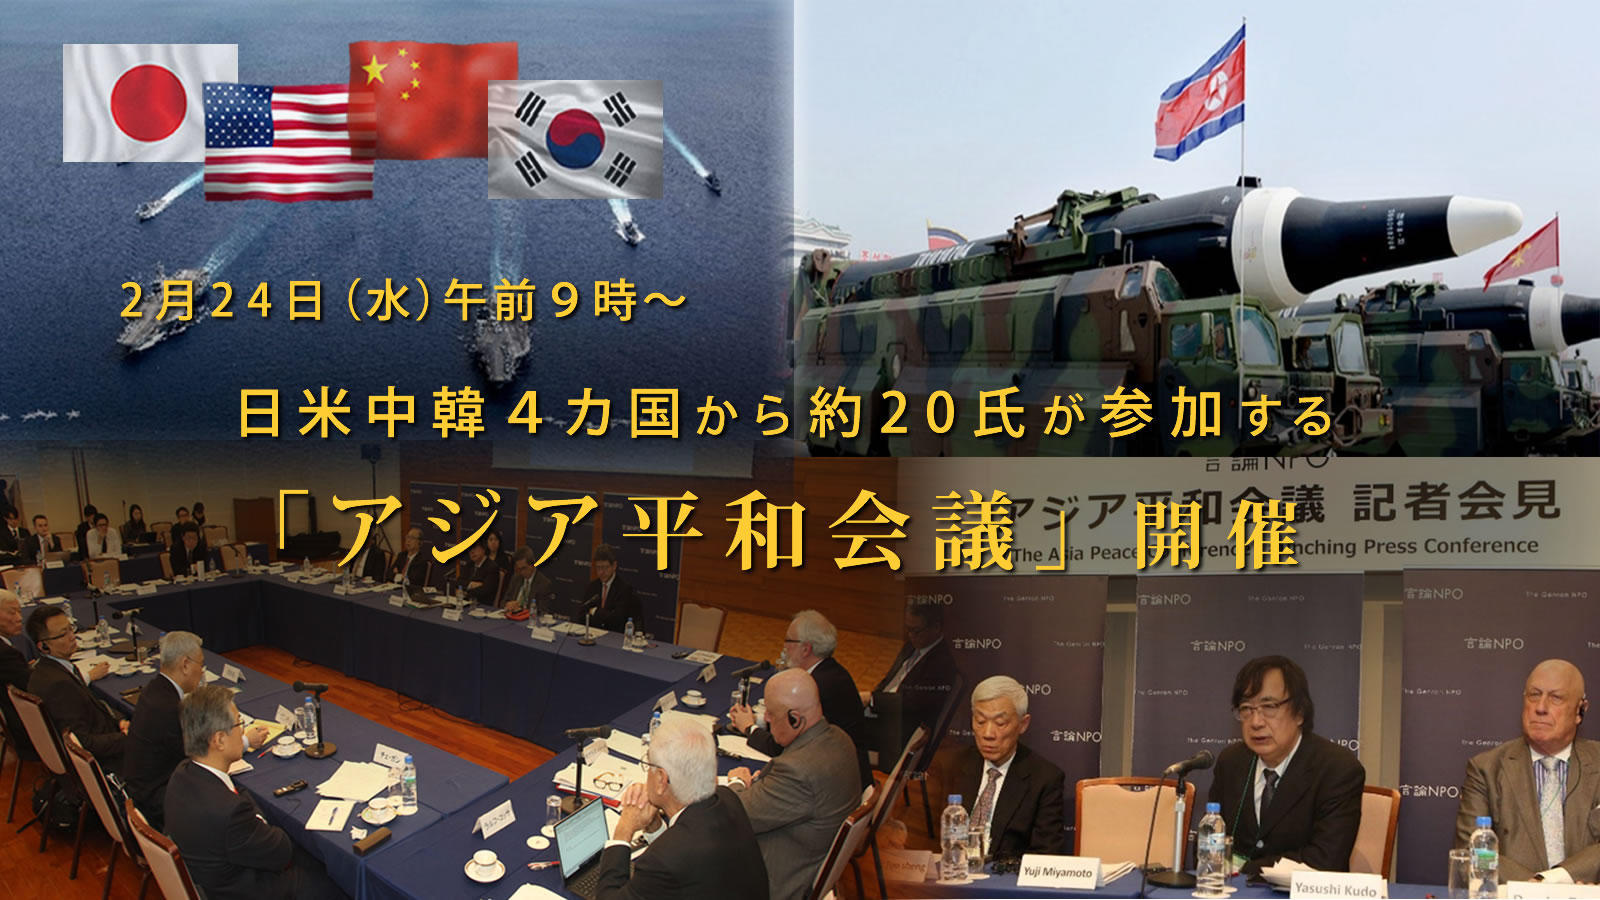 日米対話」「アジア平和会議」 パネリスト略歴 / 東京－北京フォーラム